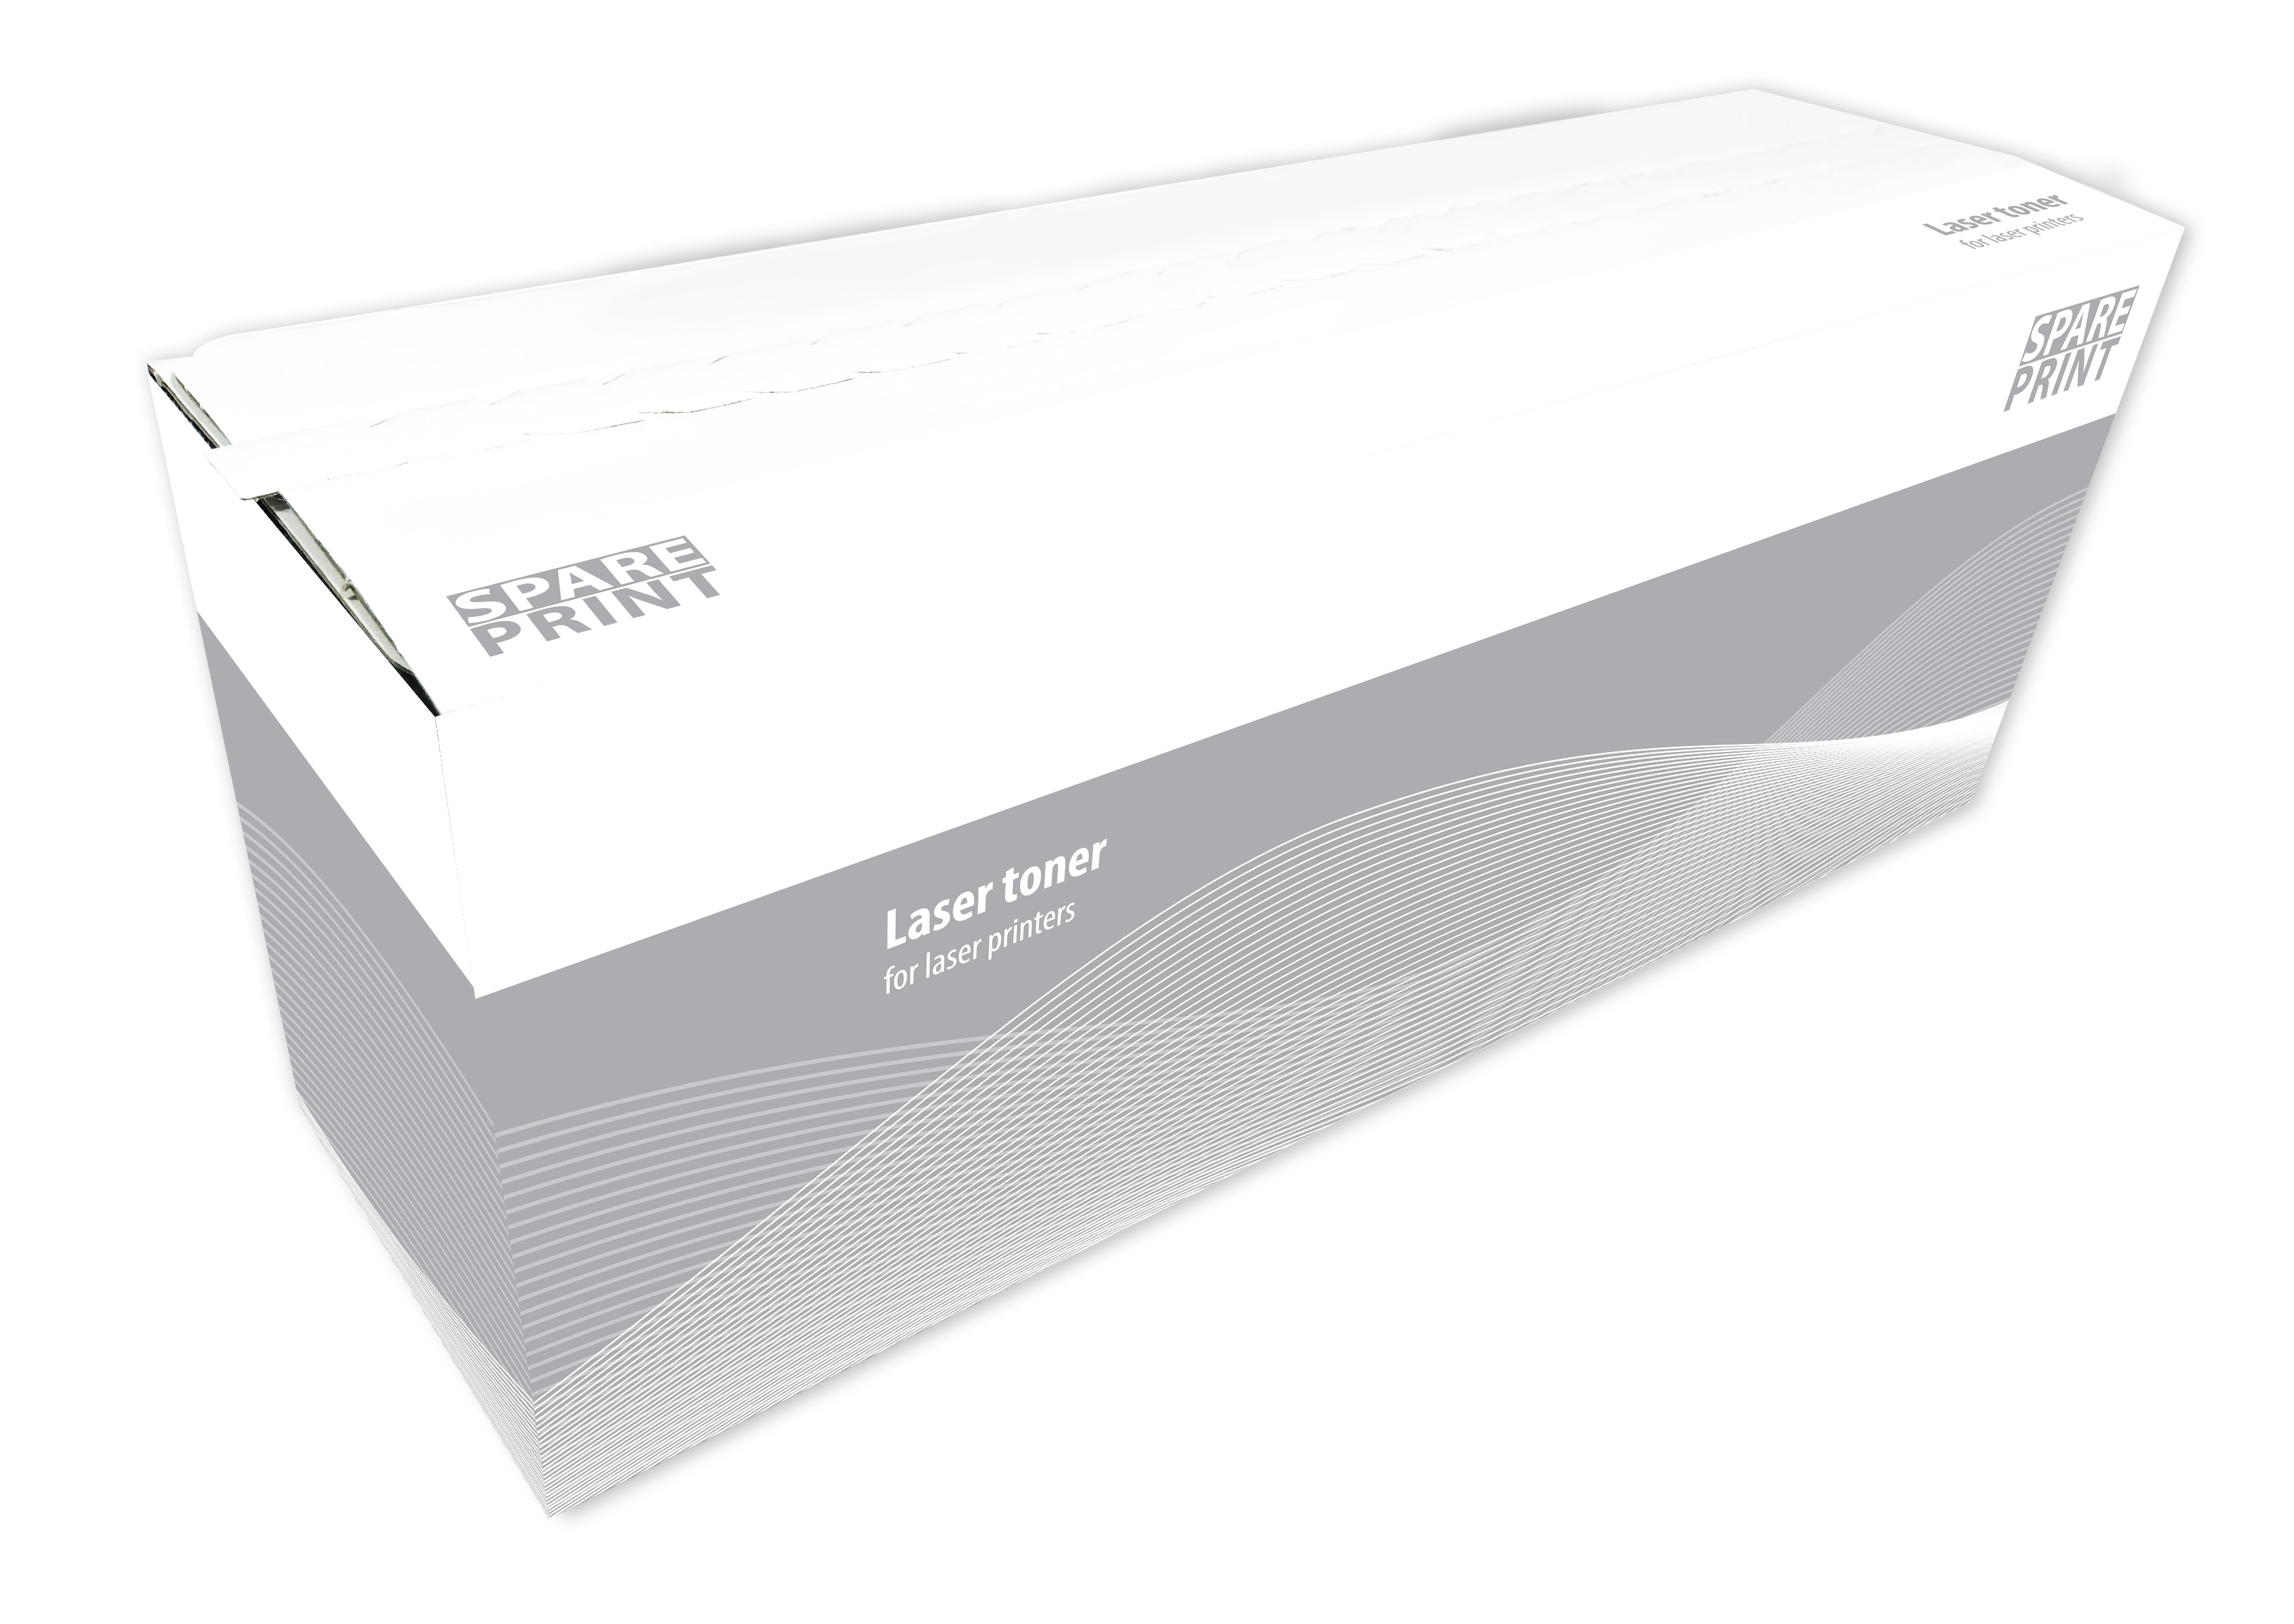 SPARE PRINT HP W1331A - kompatibilní SPARE PRINT kompatibilní toner W1331A č. 331A Black pro tiskárny